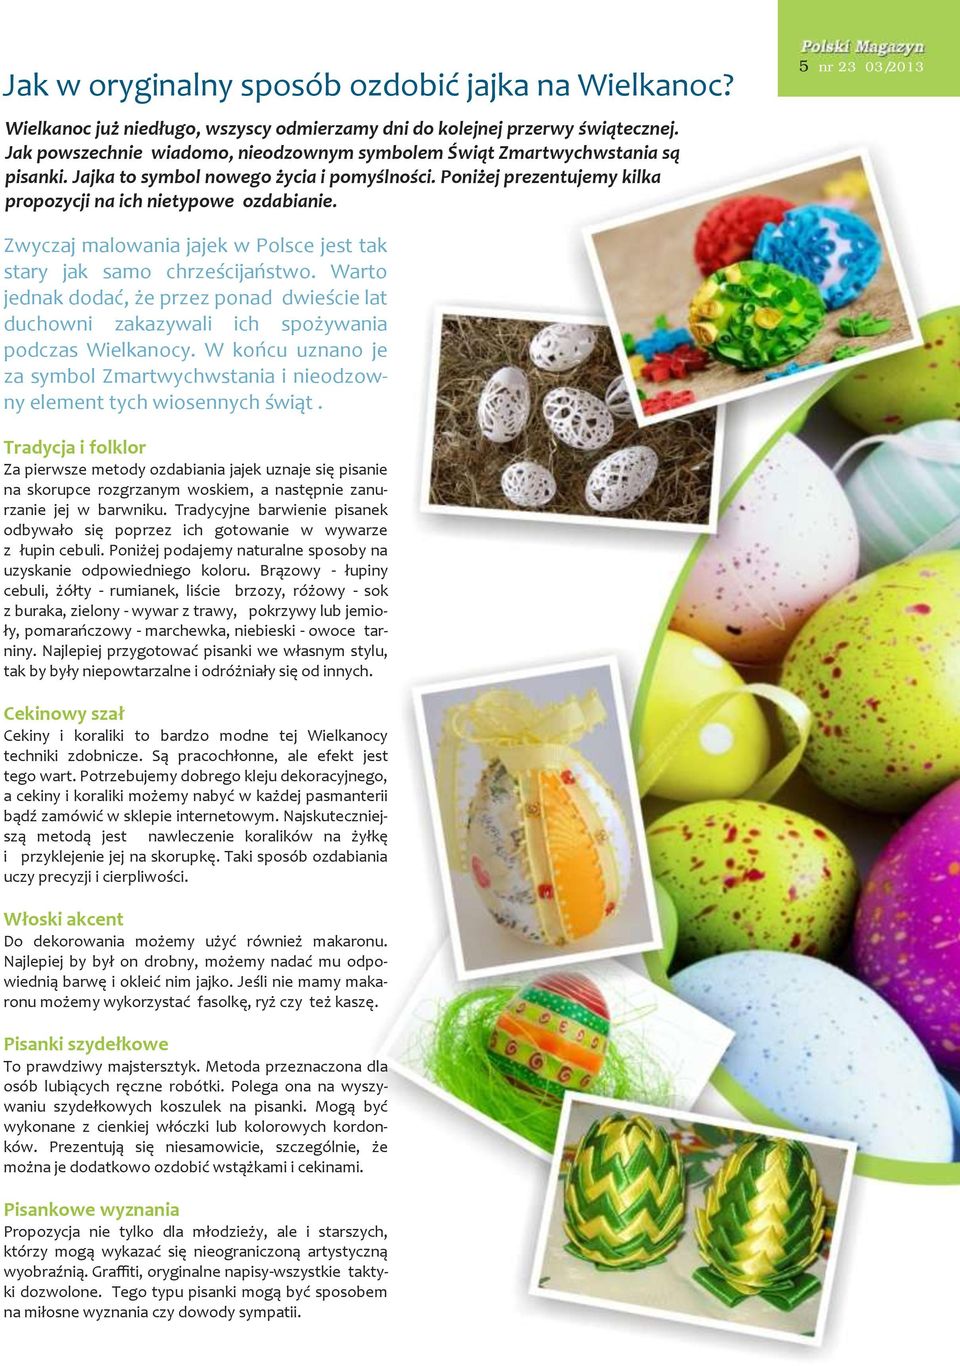 5 nr 23 03/2013 Zwyczaj malowania jajek w Polsce jest tak stary jak samo chrześcijaństwo. Warto jednak dodać, że przez ponad dwieście lat duchowni zakazywali ich spożywania podczas Wielkanocy.